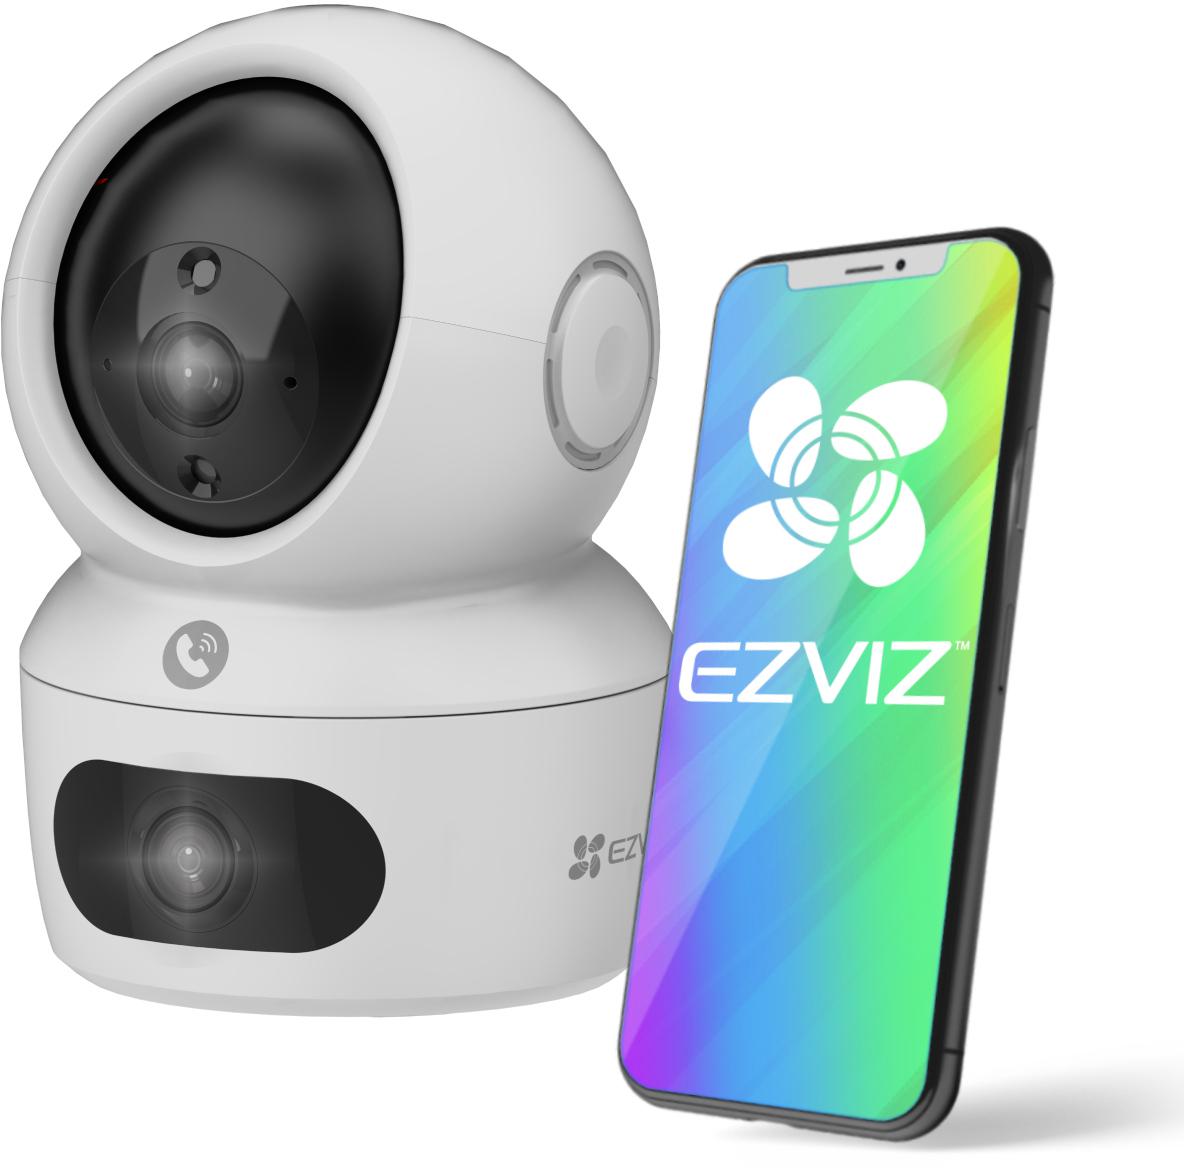 Wewnętrzna kamera bezpieczeństwa IP z dwoma obiektywami EZVIZ H7C Dual 2K+ - najważniejsze cechy urządzenia monitorującego: